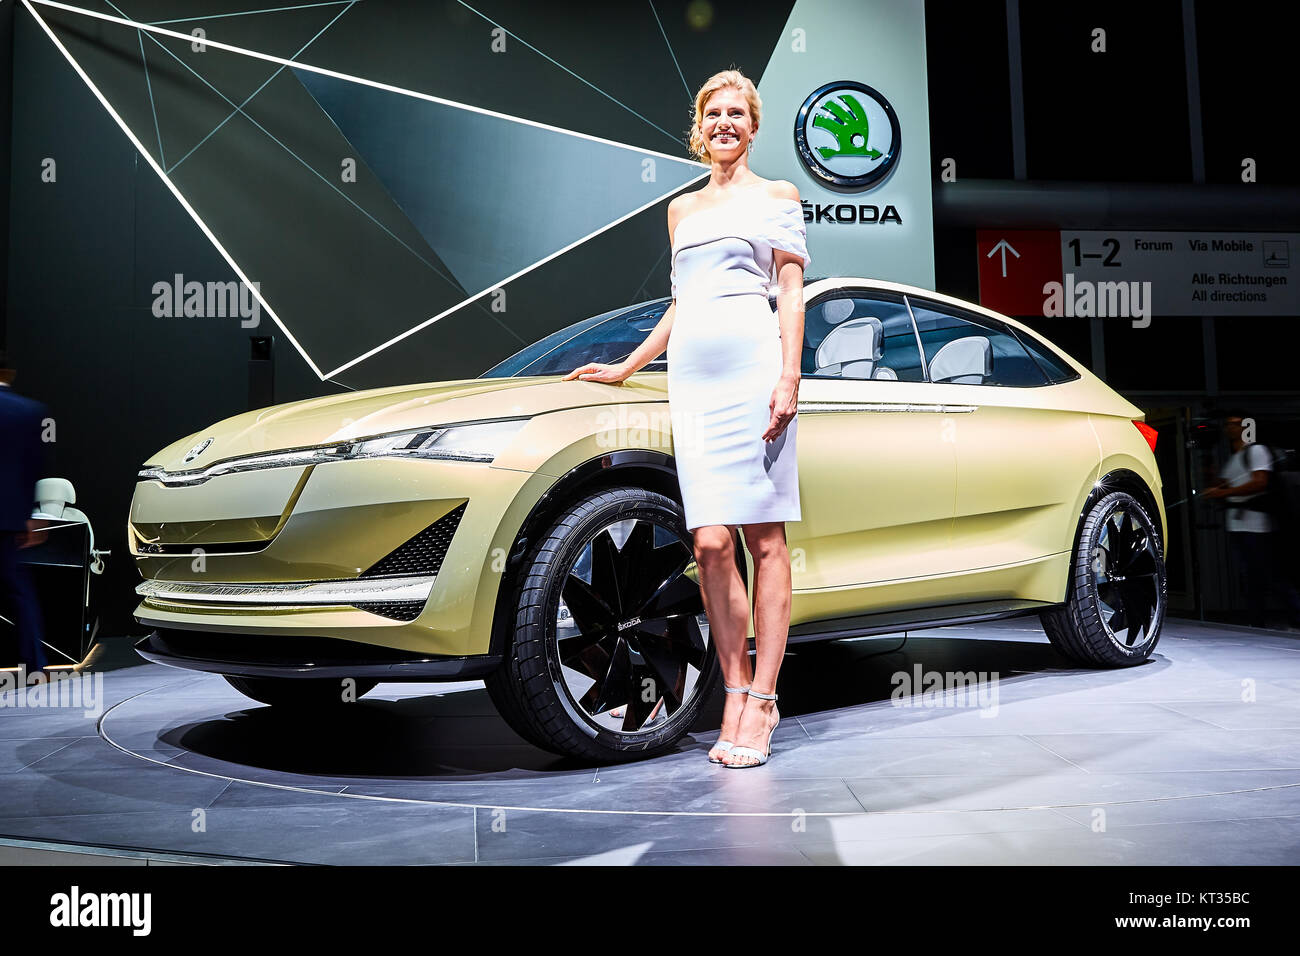 Francfort, Allemagne - le 12 septembre 2017 : 2017 Skoda Vision E Concept présenté sur le 67-ème Salon International de l'Automobile de Francfort (IAA) dans la Messe Frank Banque D'Images